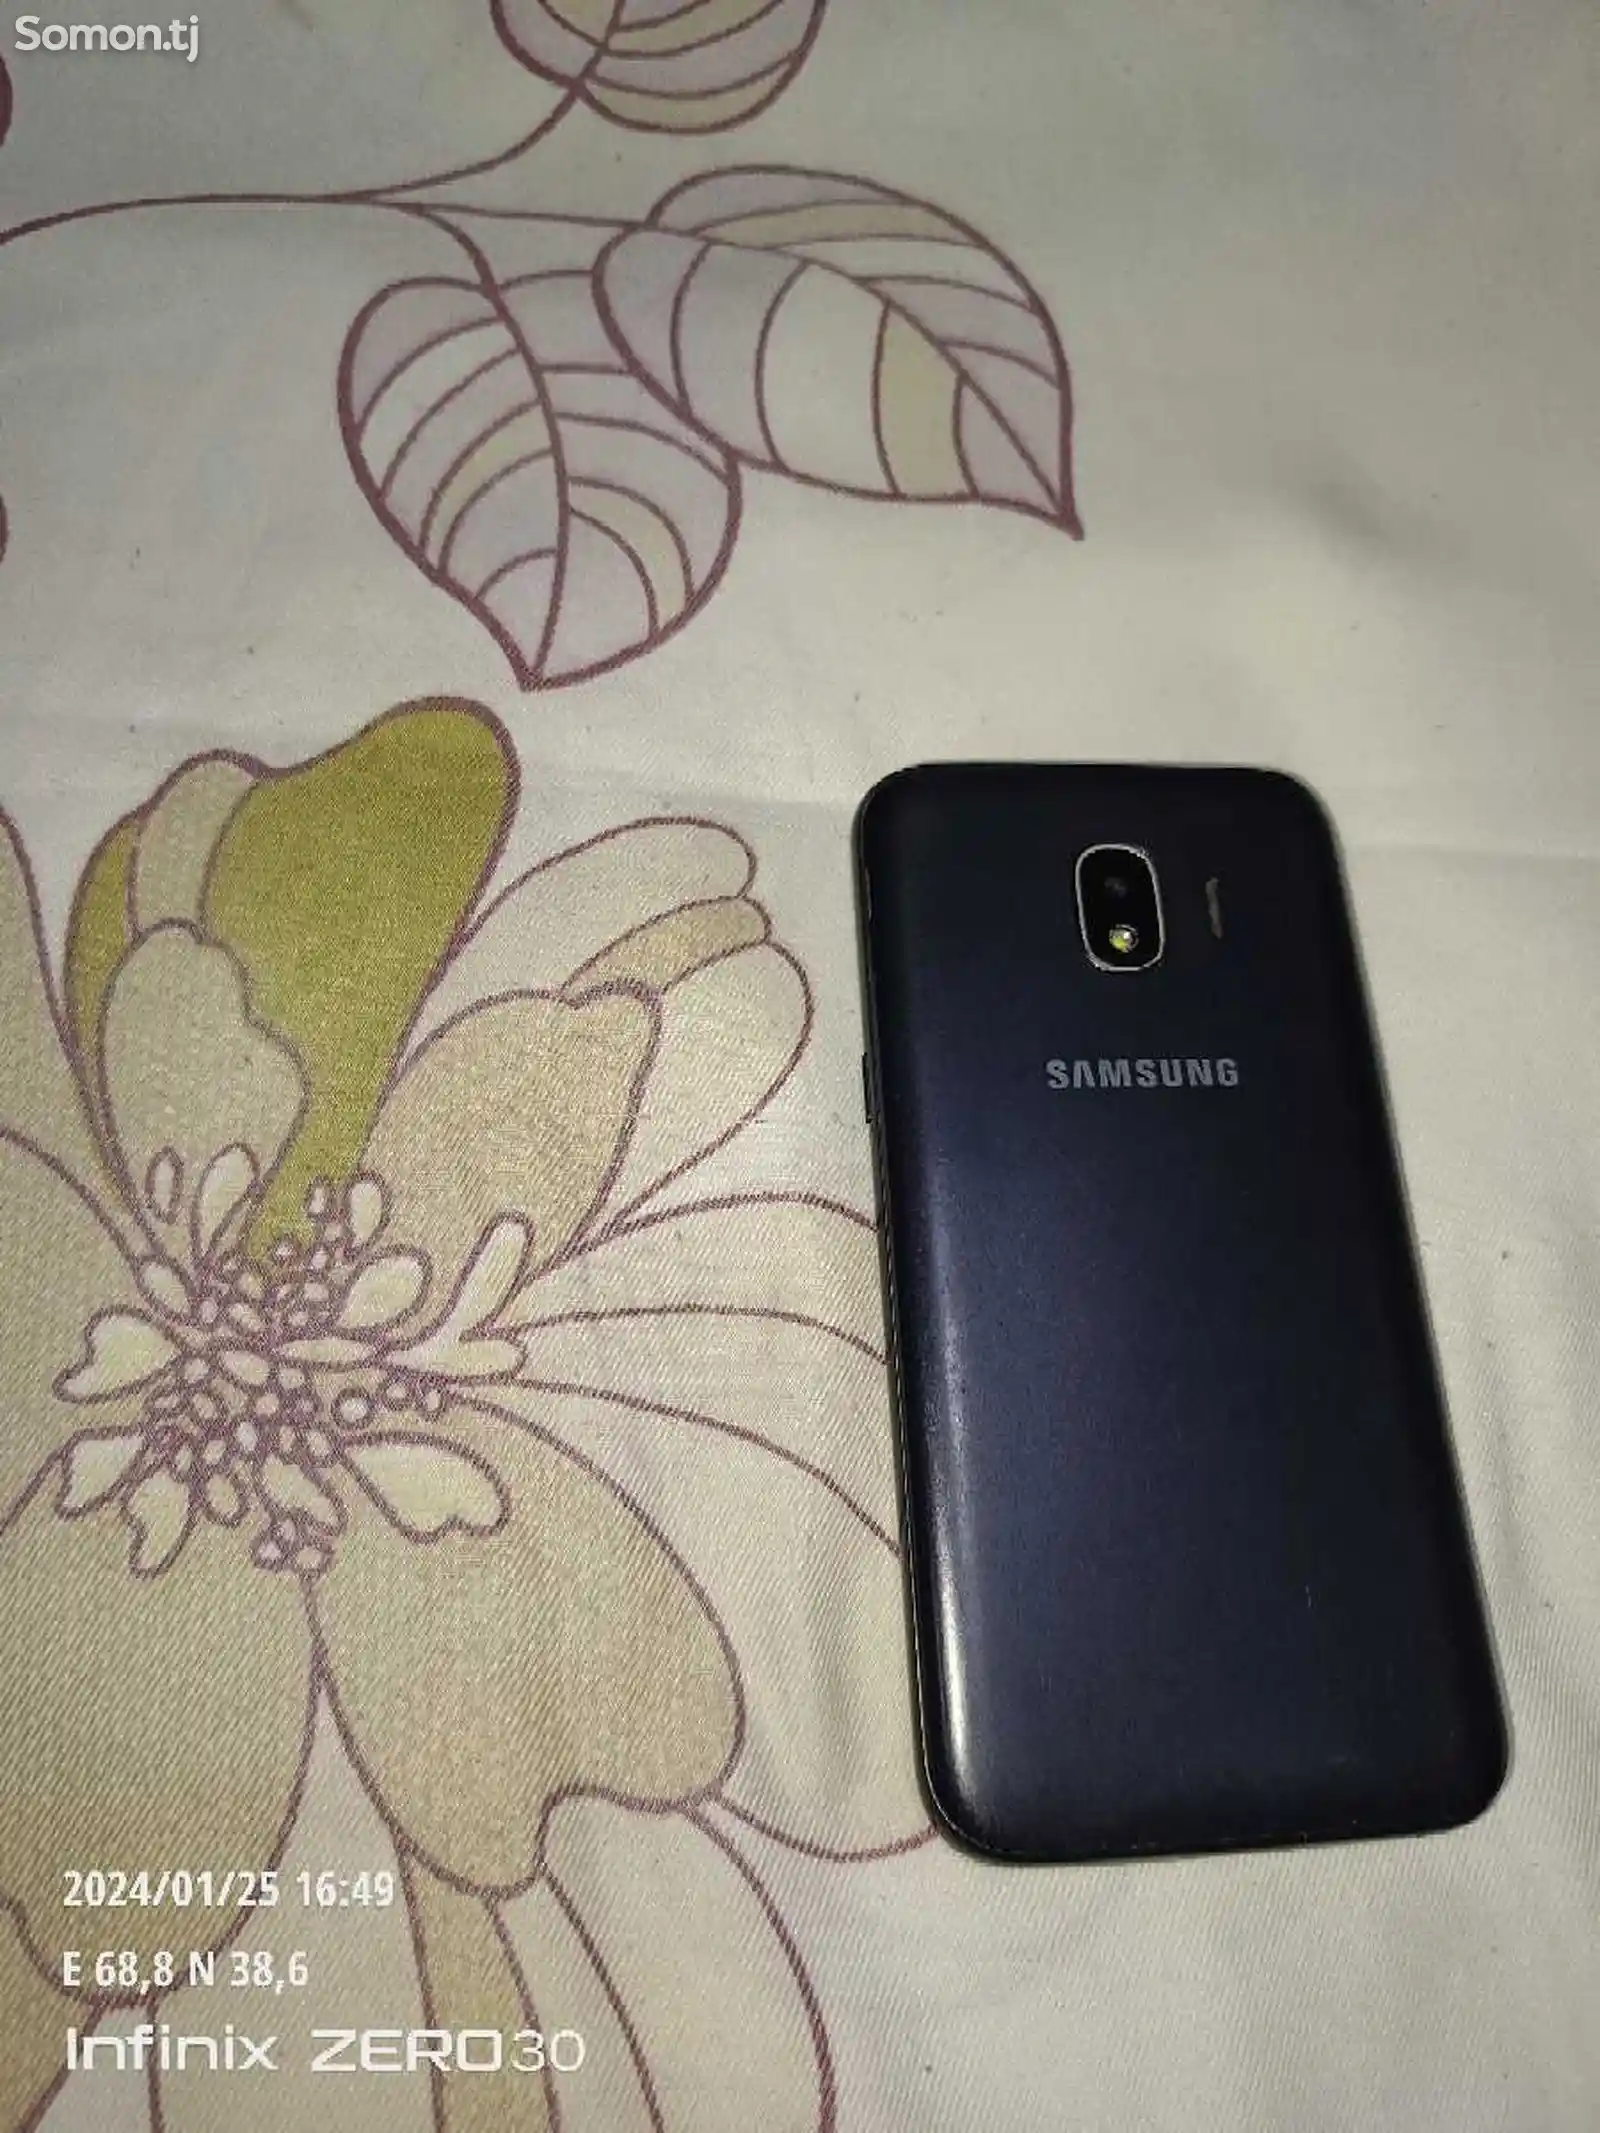 Samsung Galaxy J2 16gb-3